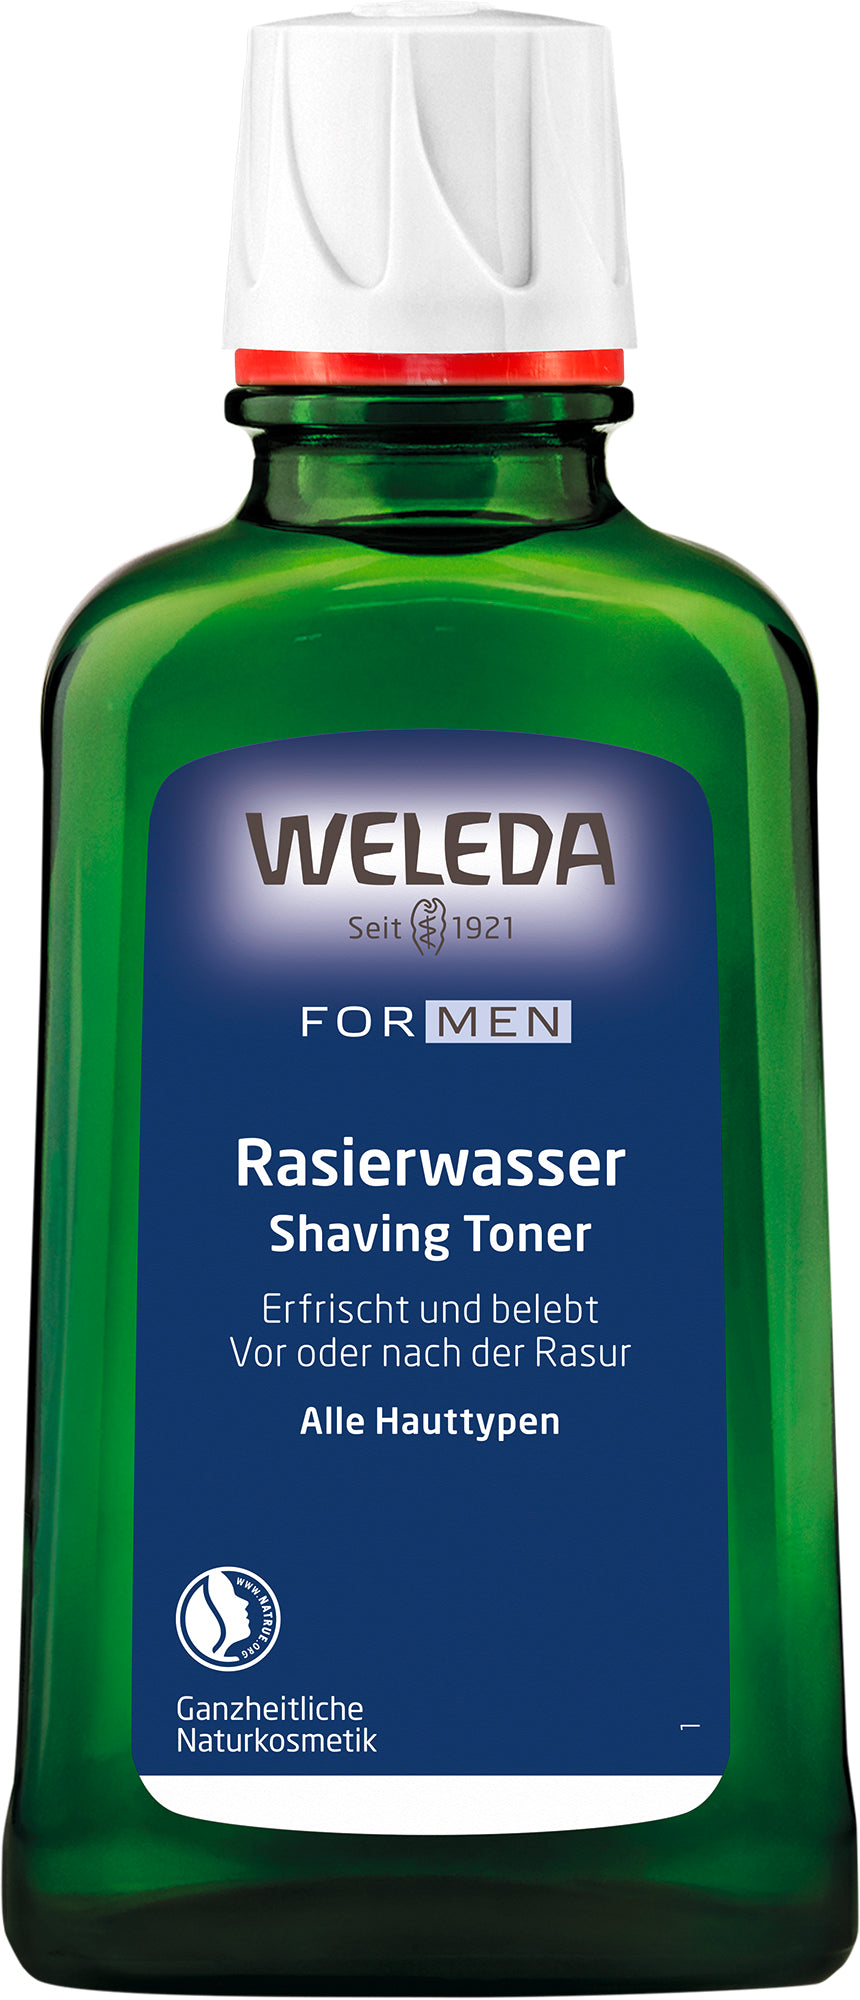 For Men Rasierwasser